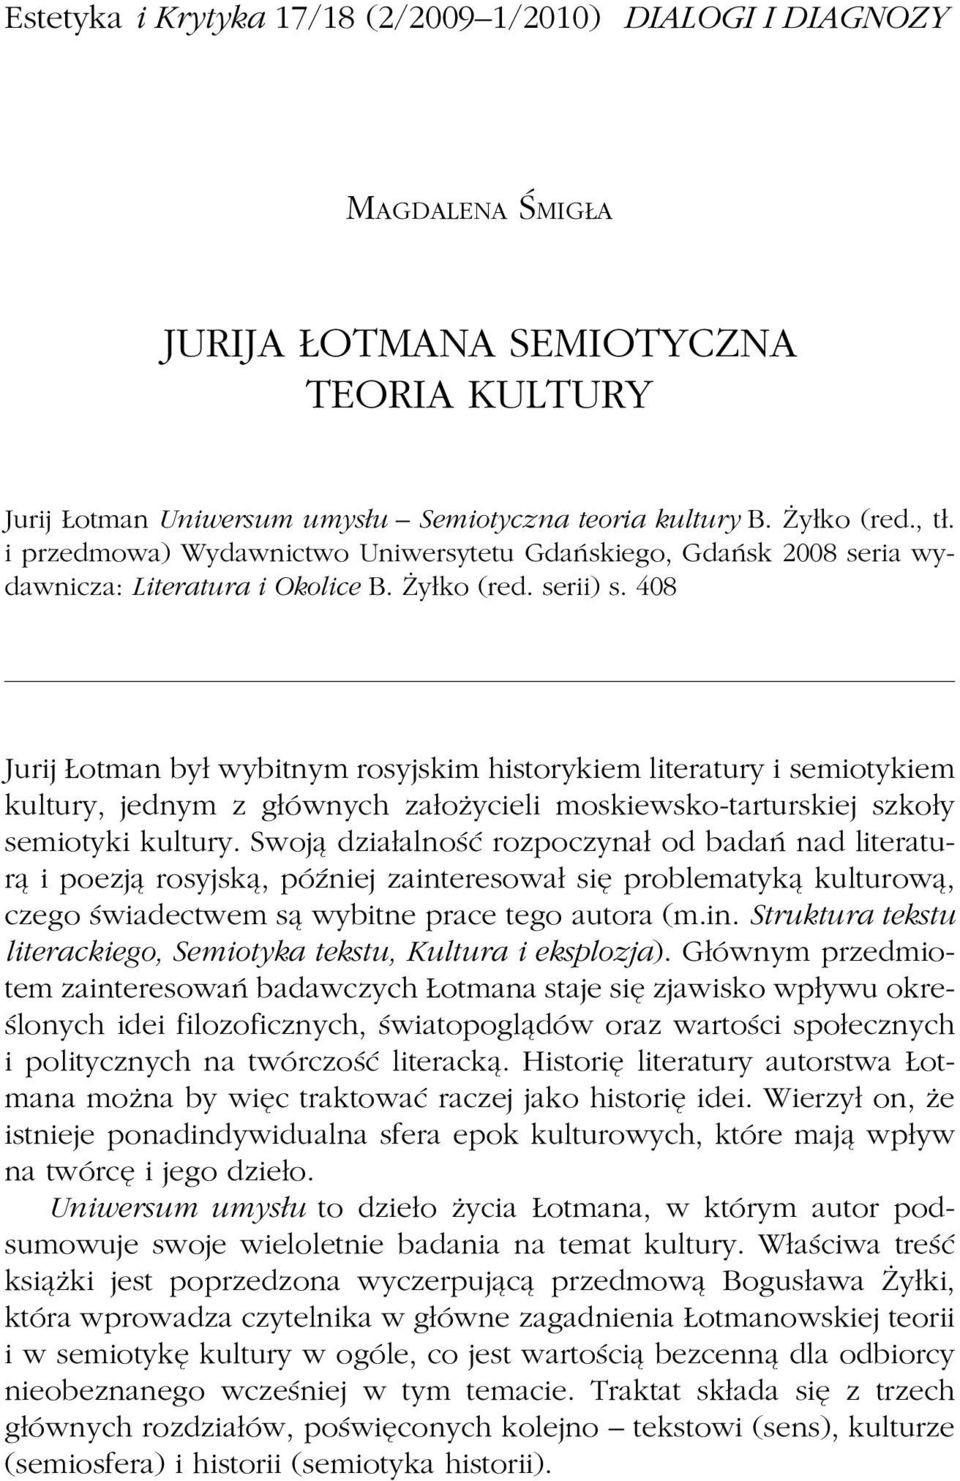 408 Jurij Łotman był wybitnym rosyjskim historykiem literatury i semiotykiem kultury, jednym z głównych założycieli moskiewsko-tarturskiej szkoły semiotyki kultury.